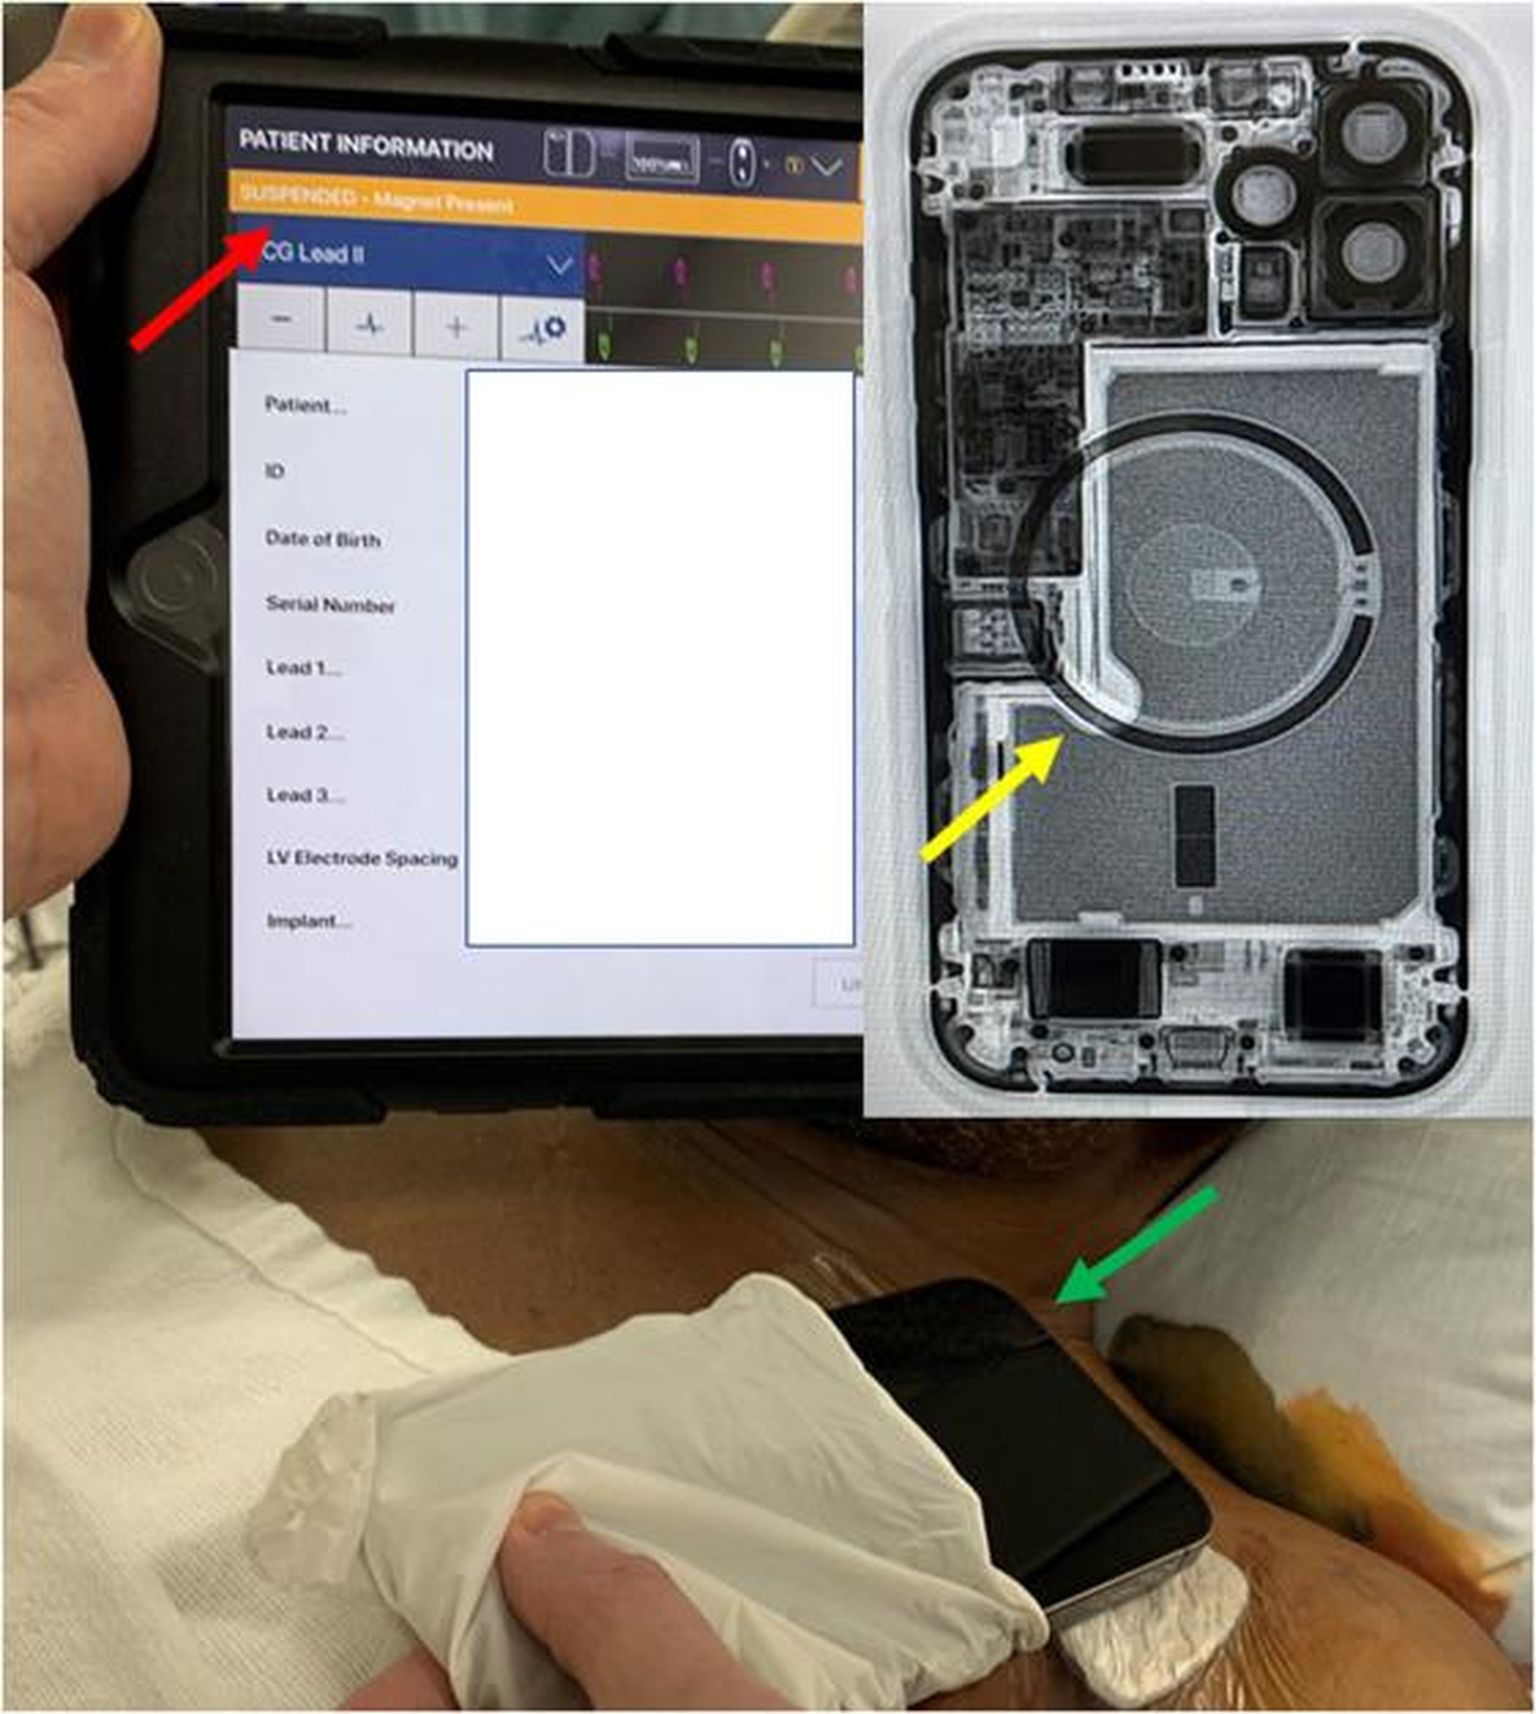 Implanteeritud defibrillaatrori programmeerimisliidesel on näha oranž riba (punase noolega näidatud) mis osutab sellele, et defibrilaator pole töökorras. See juhtus, kui patsiendi rinnale asetati sisse ehitatud juhtmevaba laadismisfunktsiooniga nutitelefon.